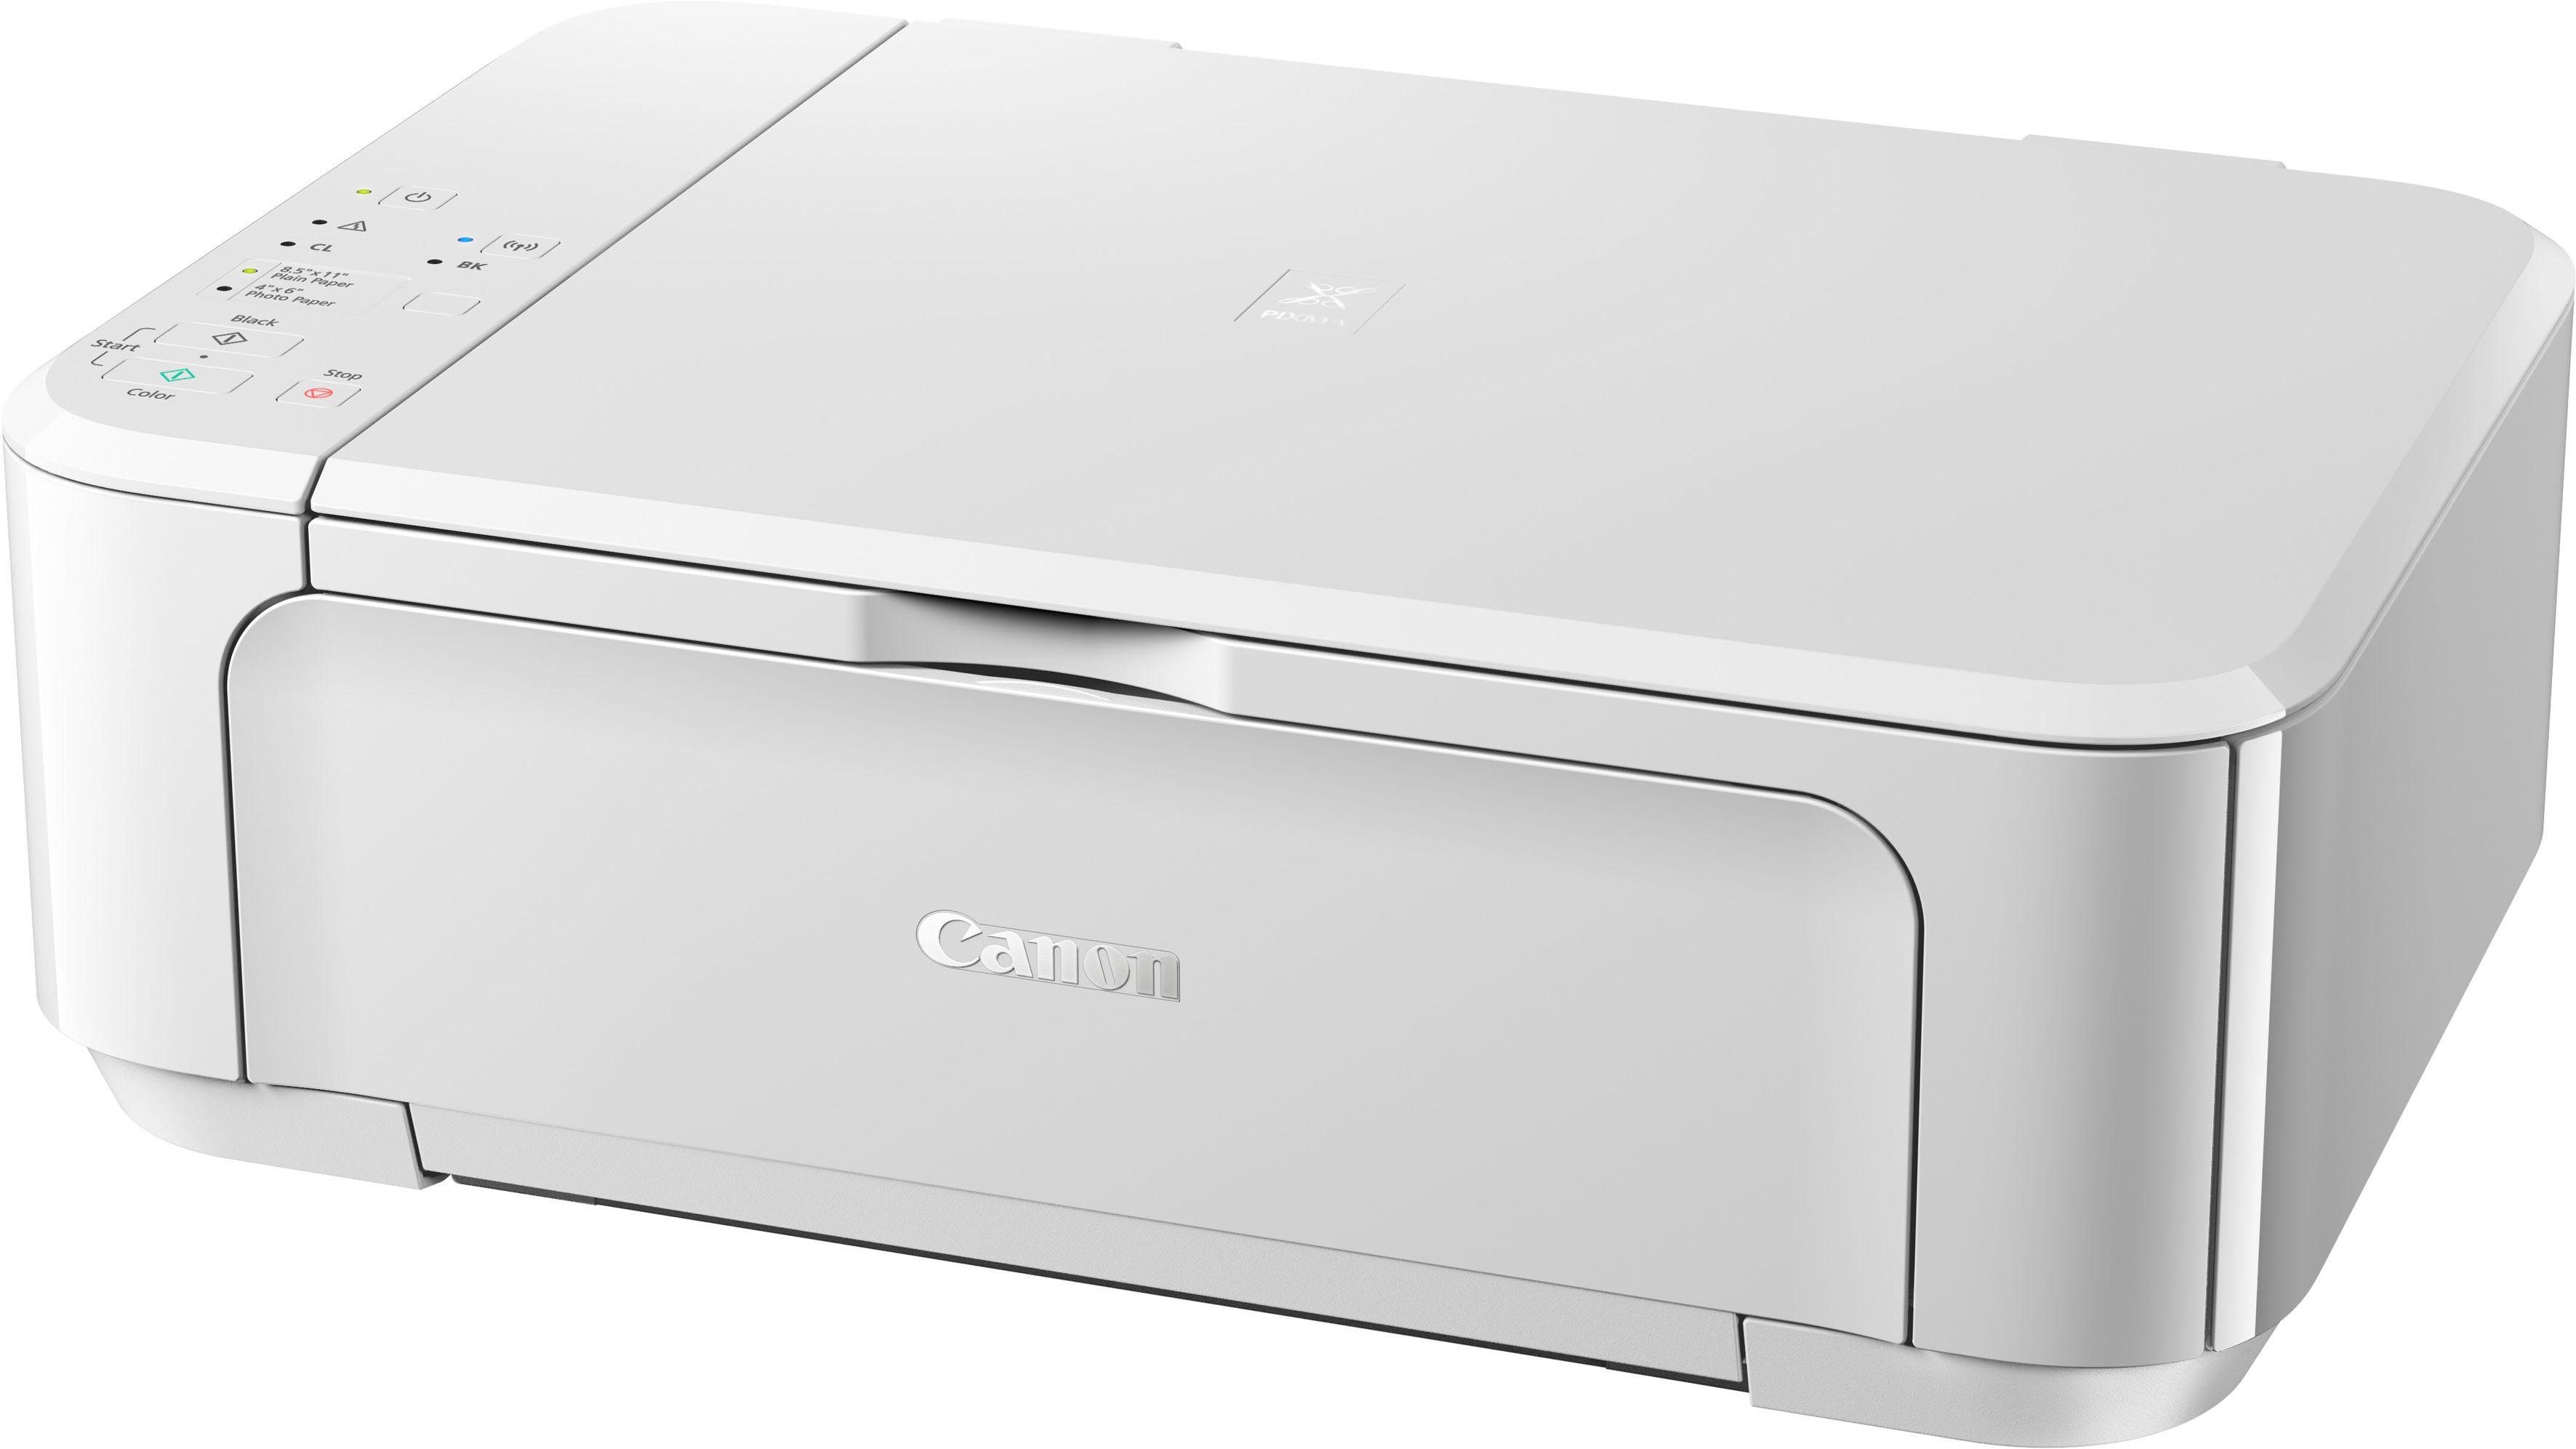 Multifunktionsdrucker, PIXMA (Wi-Fi) Canon (WLAN MG3650S weiß